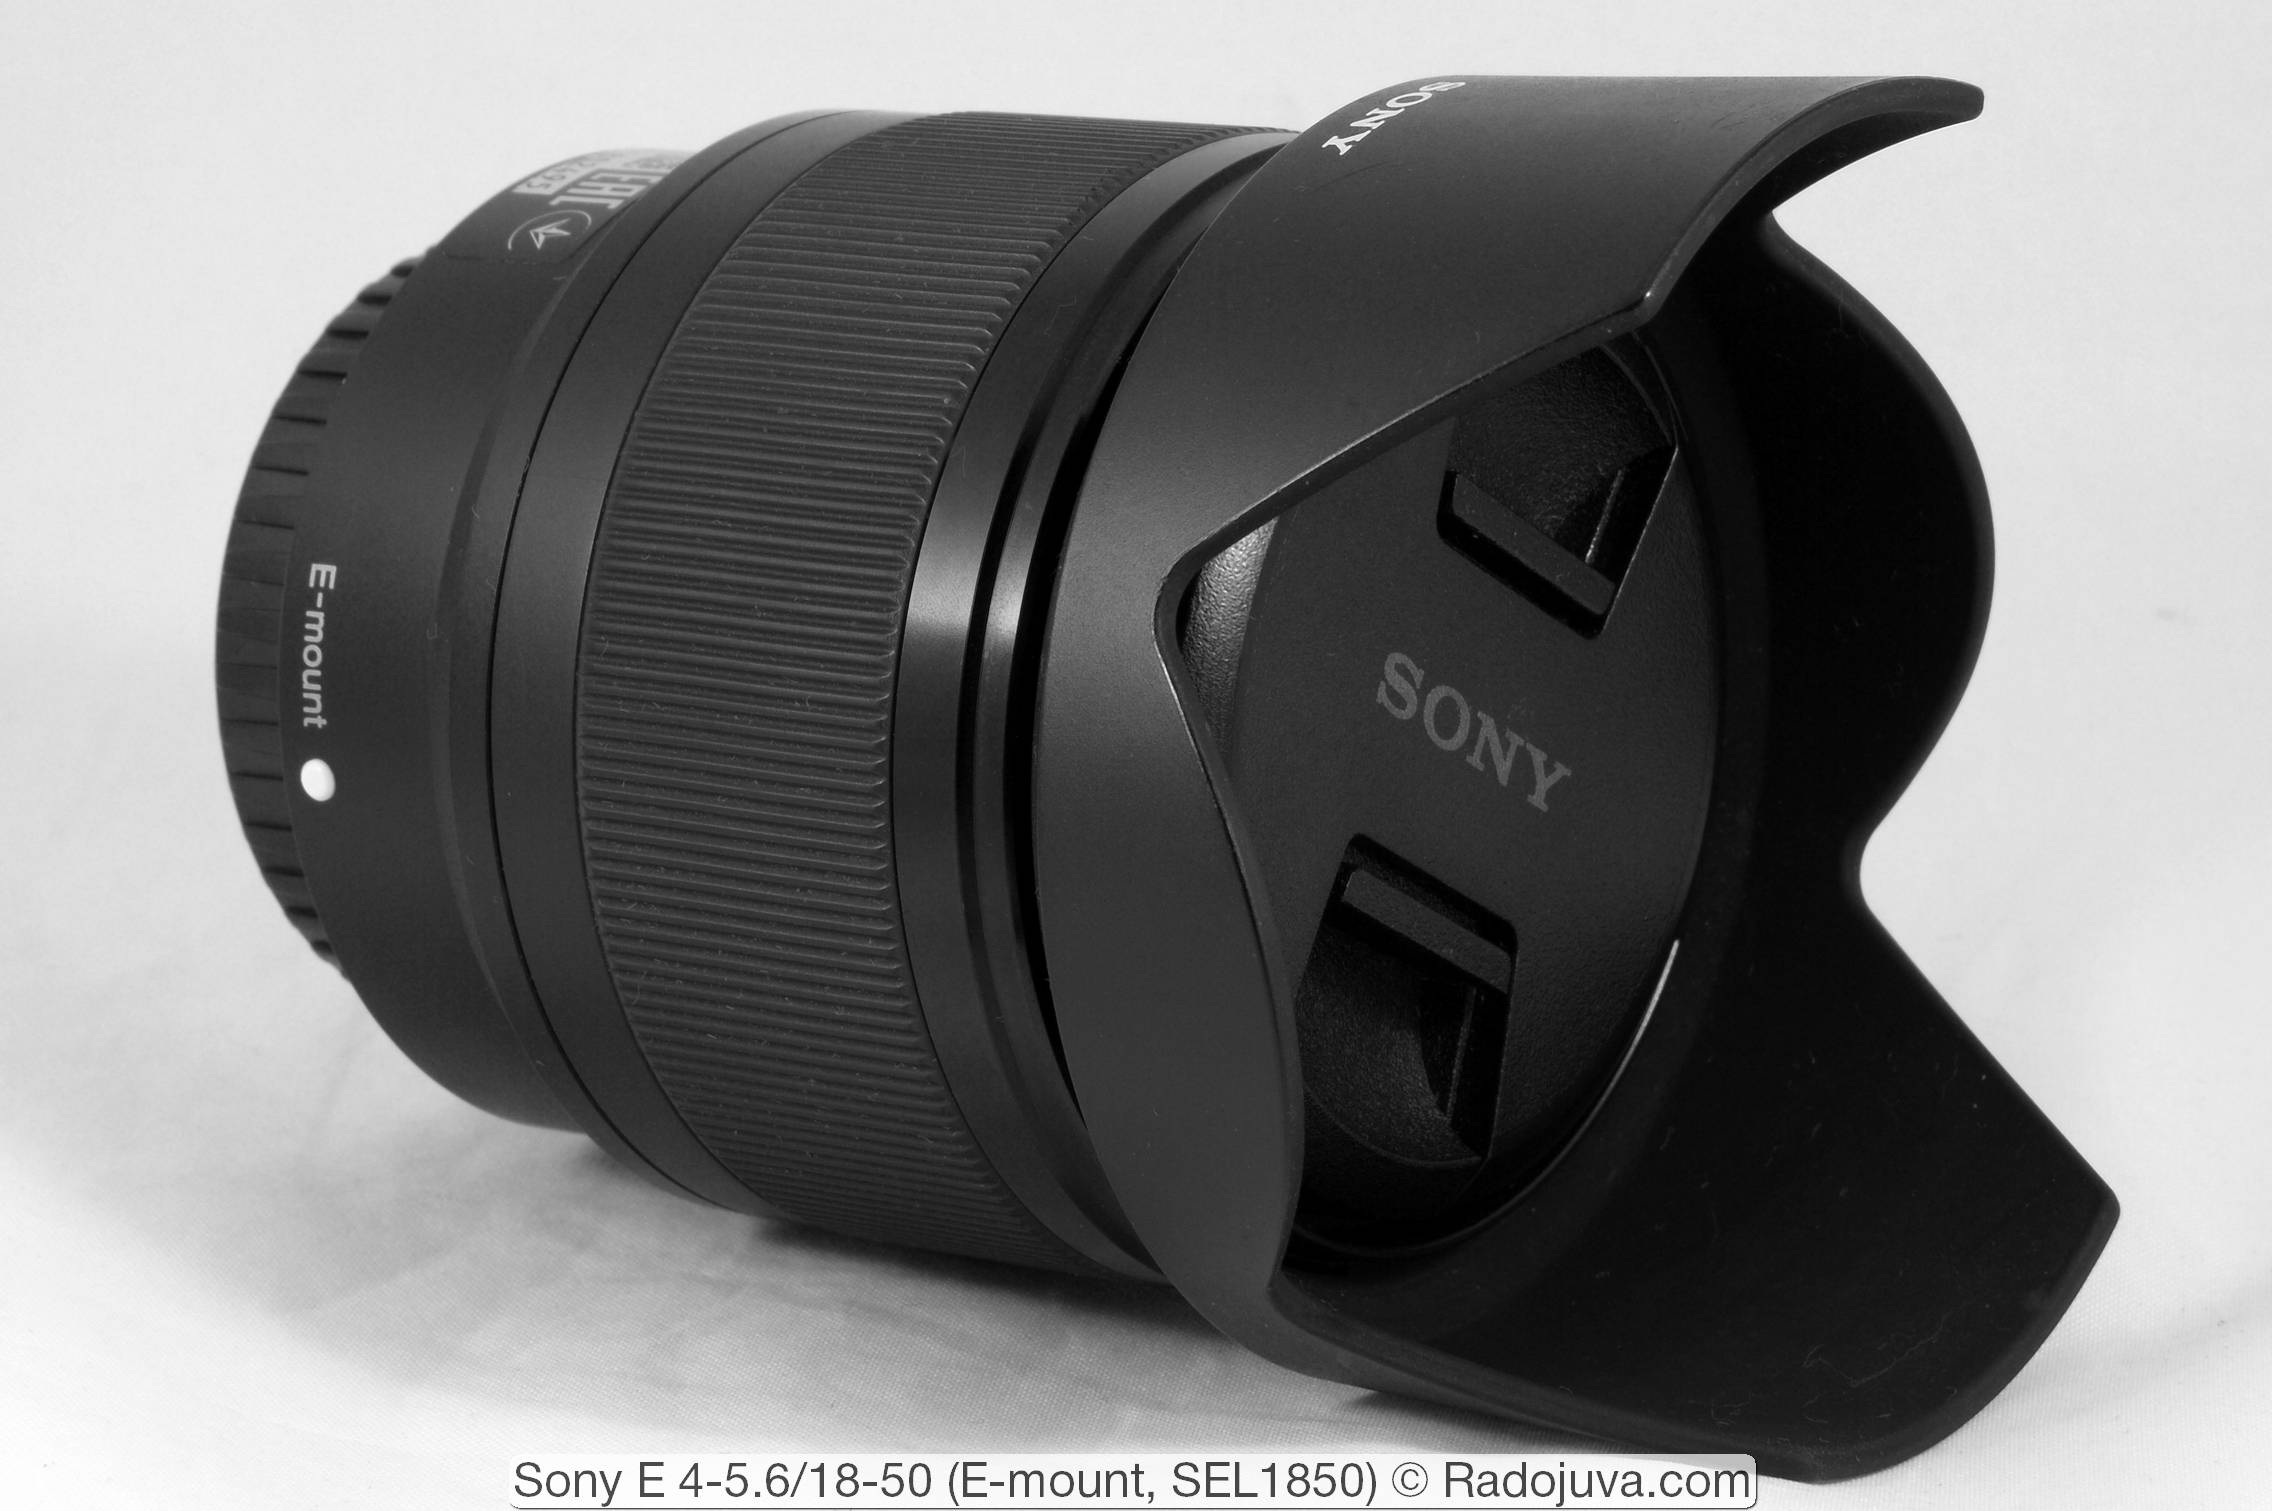 Sony E 4-5.6 / 18-50 (E-mount, SEL1850)